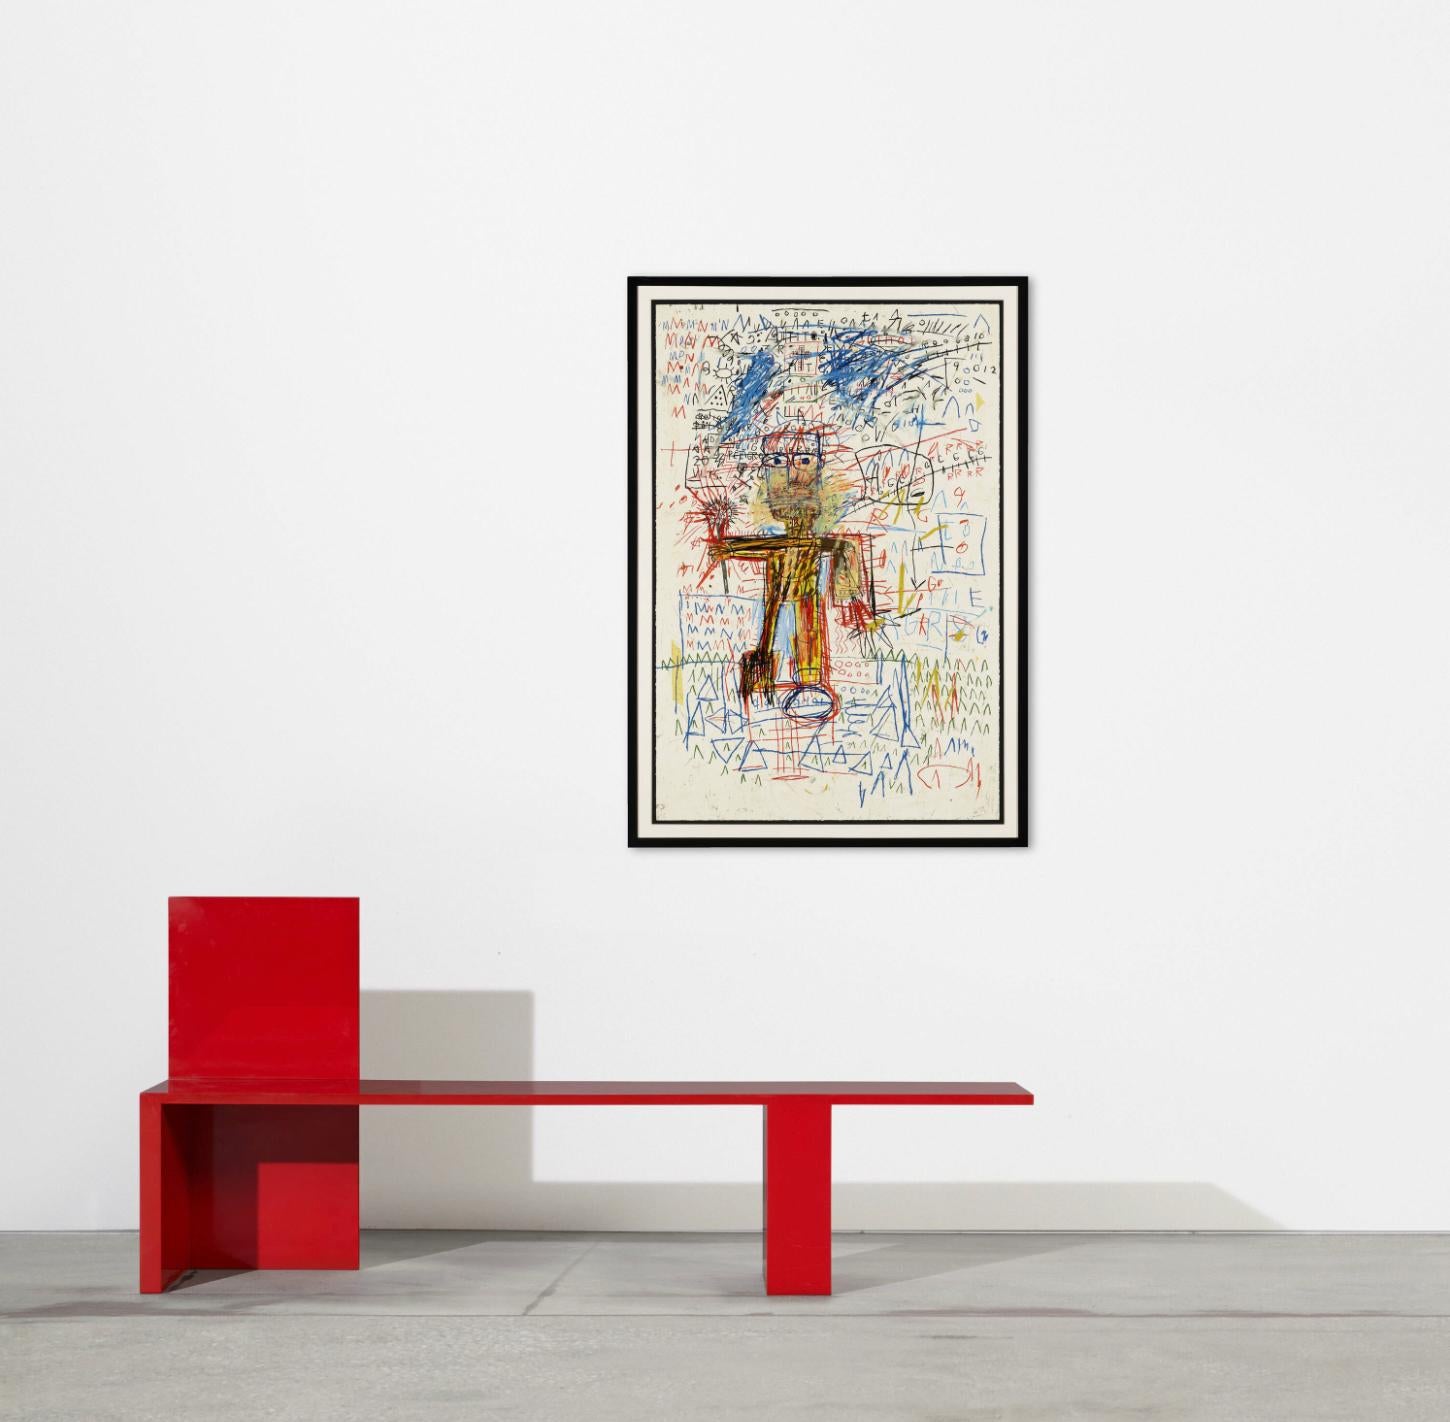 Artiste :  Jean-Michel Basquiat 
Titre : Sans titre IV (du portfolio The Figure)
Taille : 48 h × 32 w in (122 × 81 cm)
Support : Sérigraphie en couleurs sur Saunders Waterford
Edition :  Original  
Année :  1982 / 2023
Notes : Numéroté en bas à